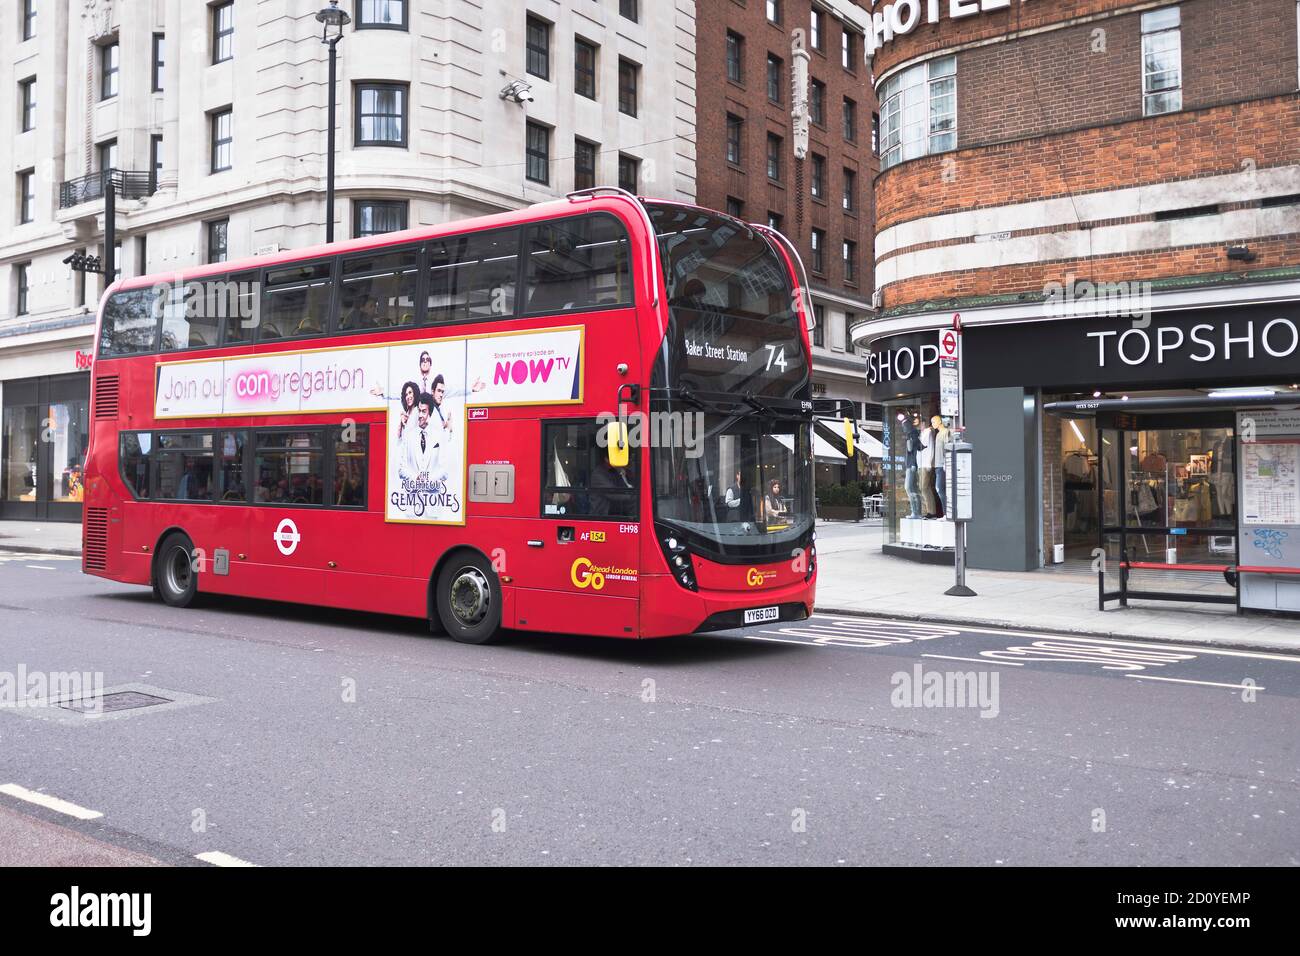 dh OXFORD STREET LONDRES INGLATERRA Reino Unido Red bus ADELANTE alexander dennis enviro400 MMC autobuses híbridos ciudad de transporte Foto de stock